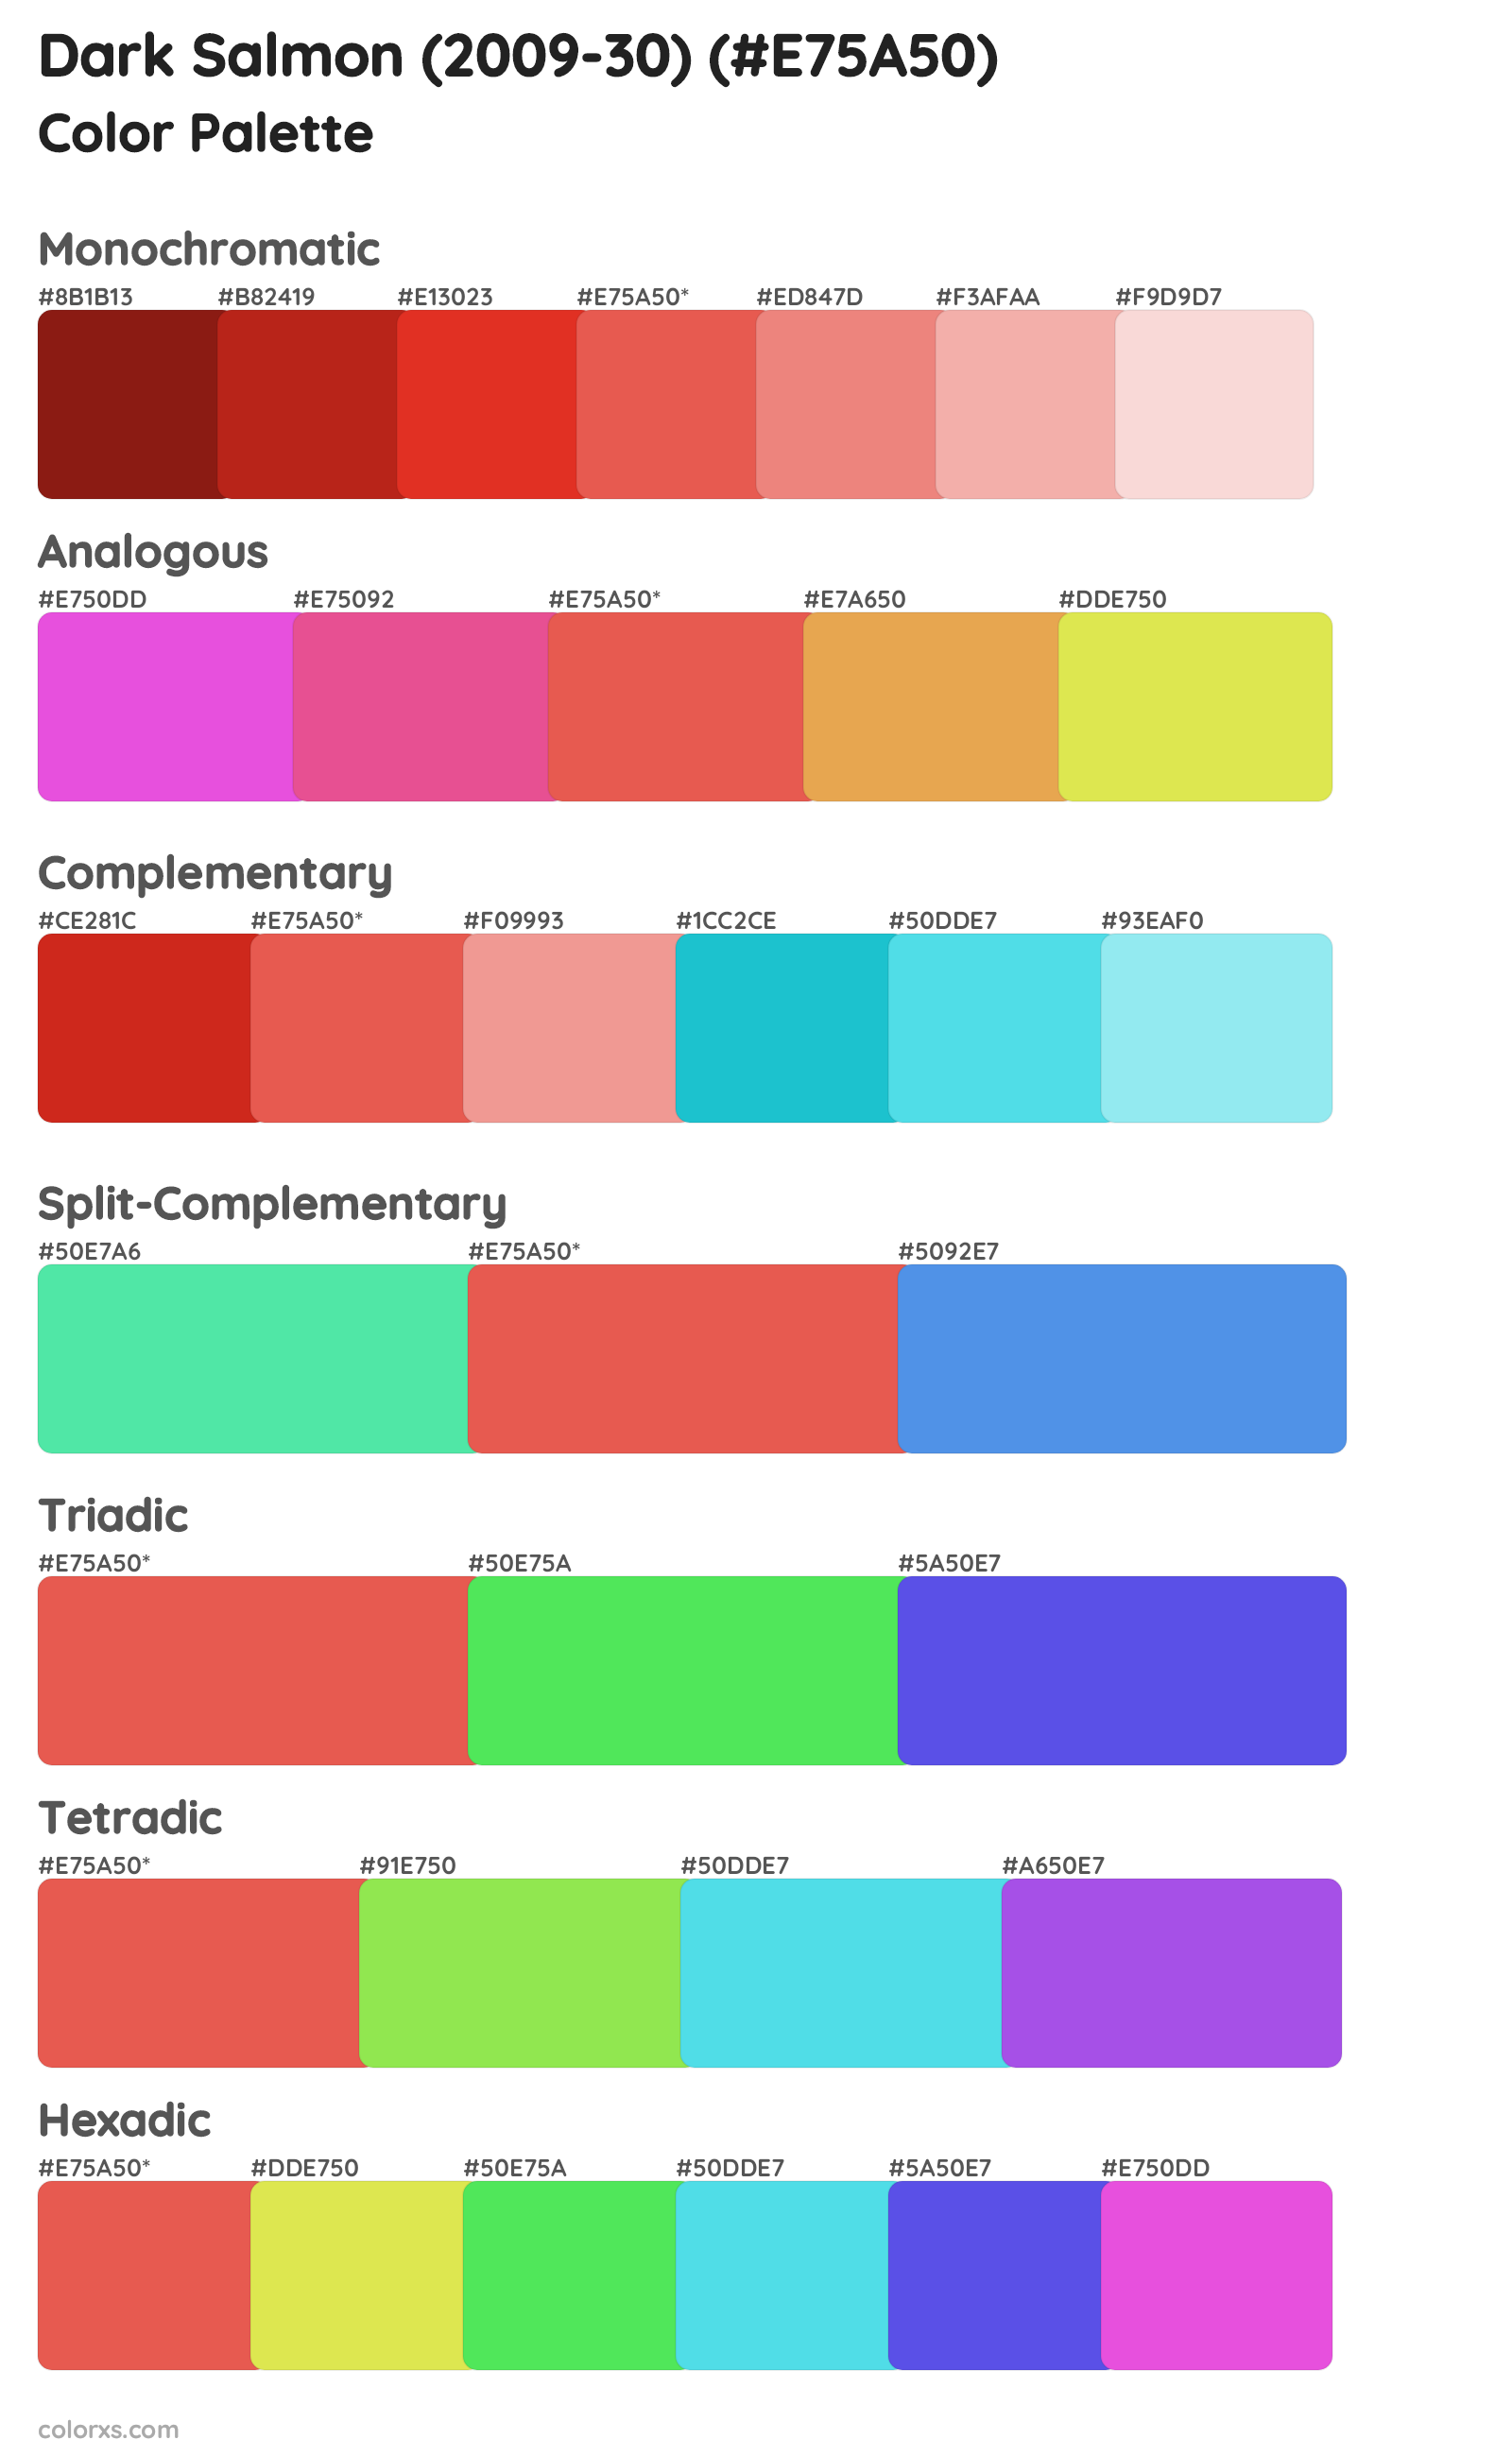 Dark Salmon (2009-30) Color Scheme Palettes